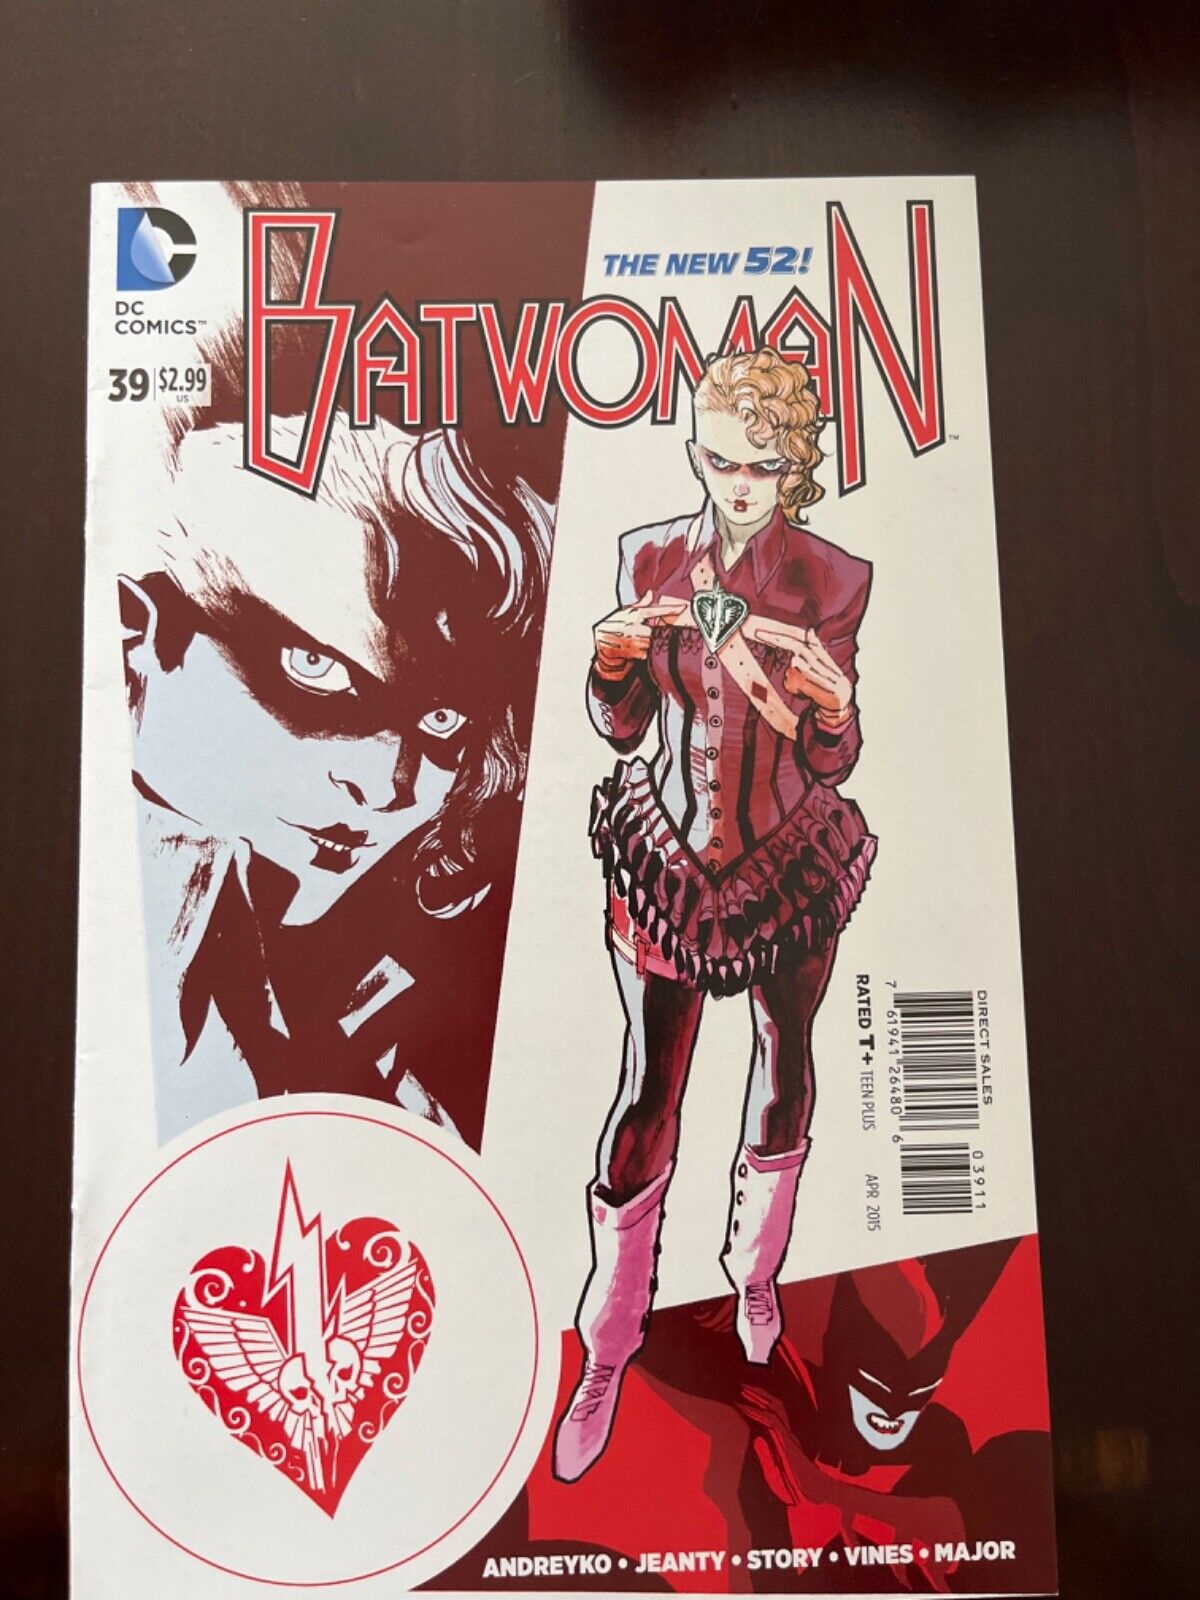 Batwoman #39 Vol. 1 (DC, 2015) VF